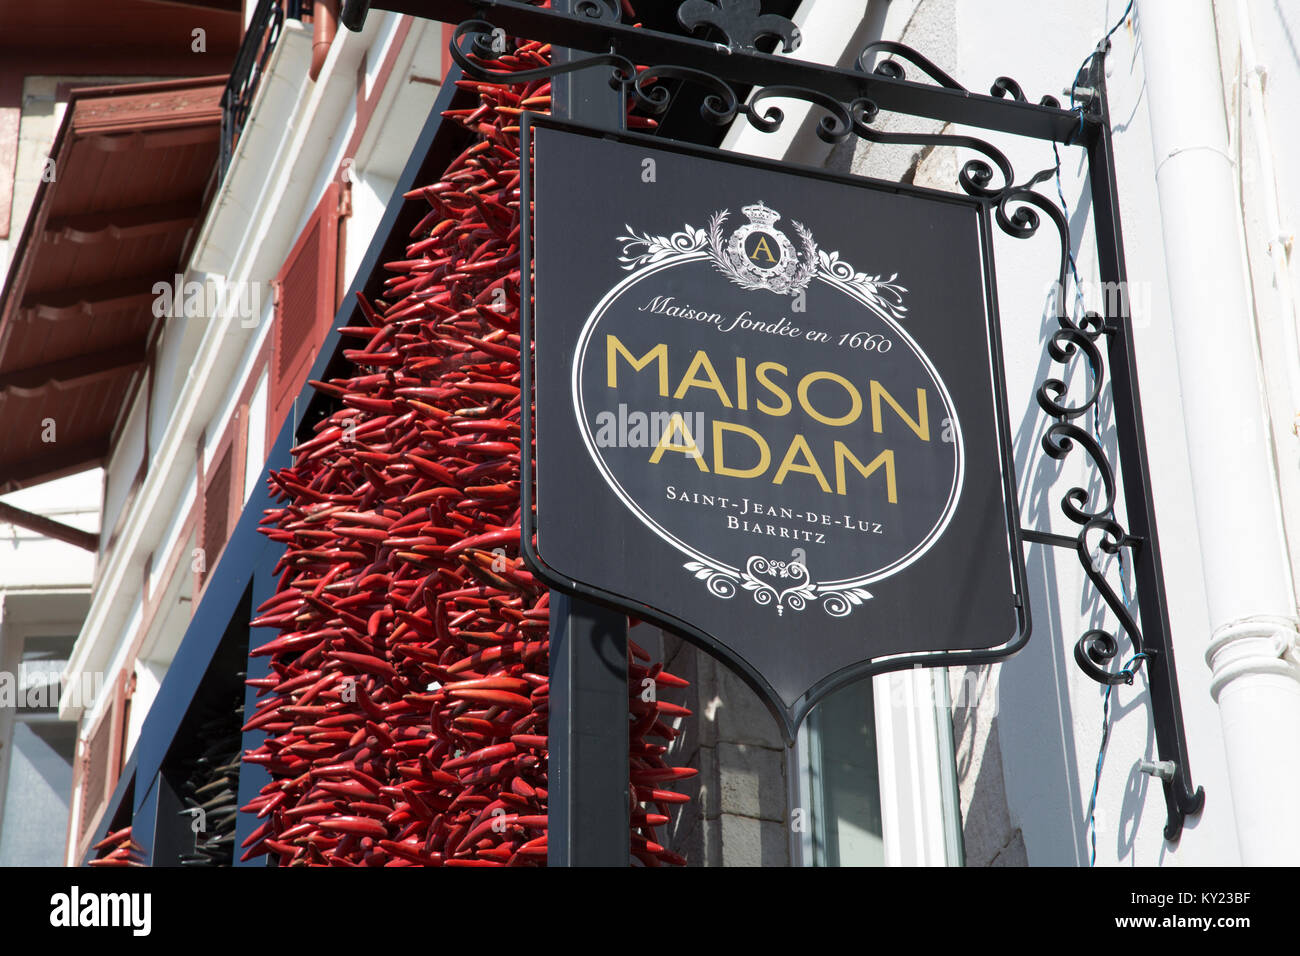 Maison Adam Shop Sign, Saint Jean de Luz; Basque Country; France Stock  Photo - Alamy